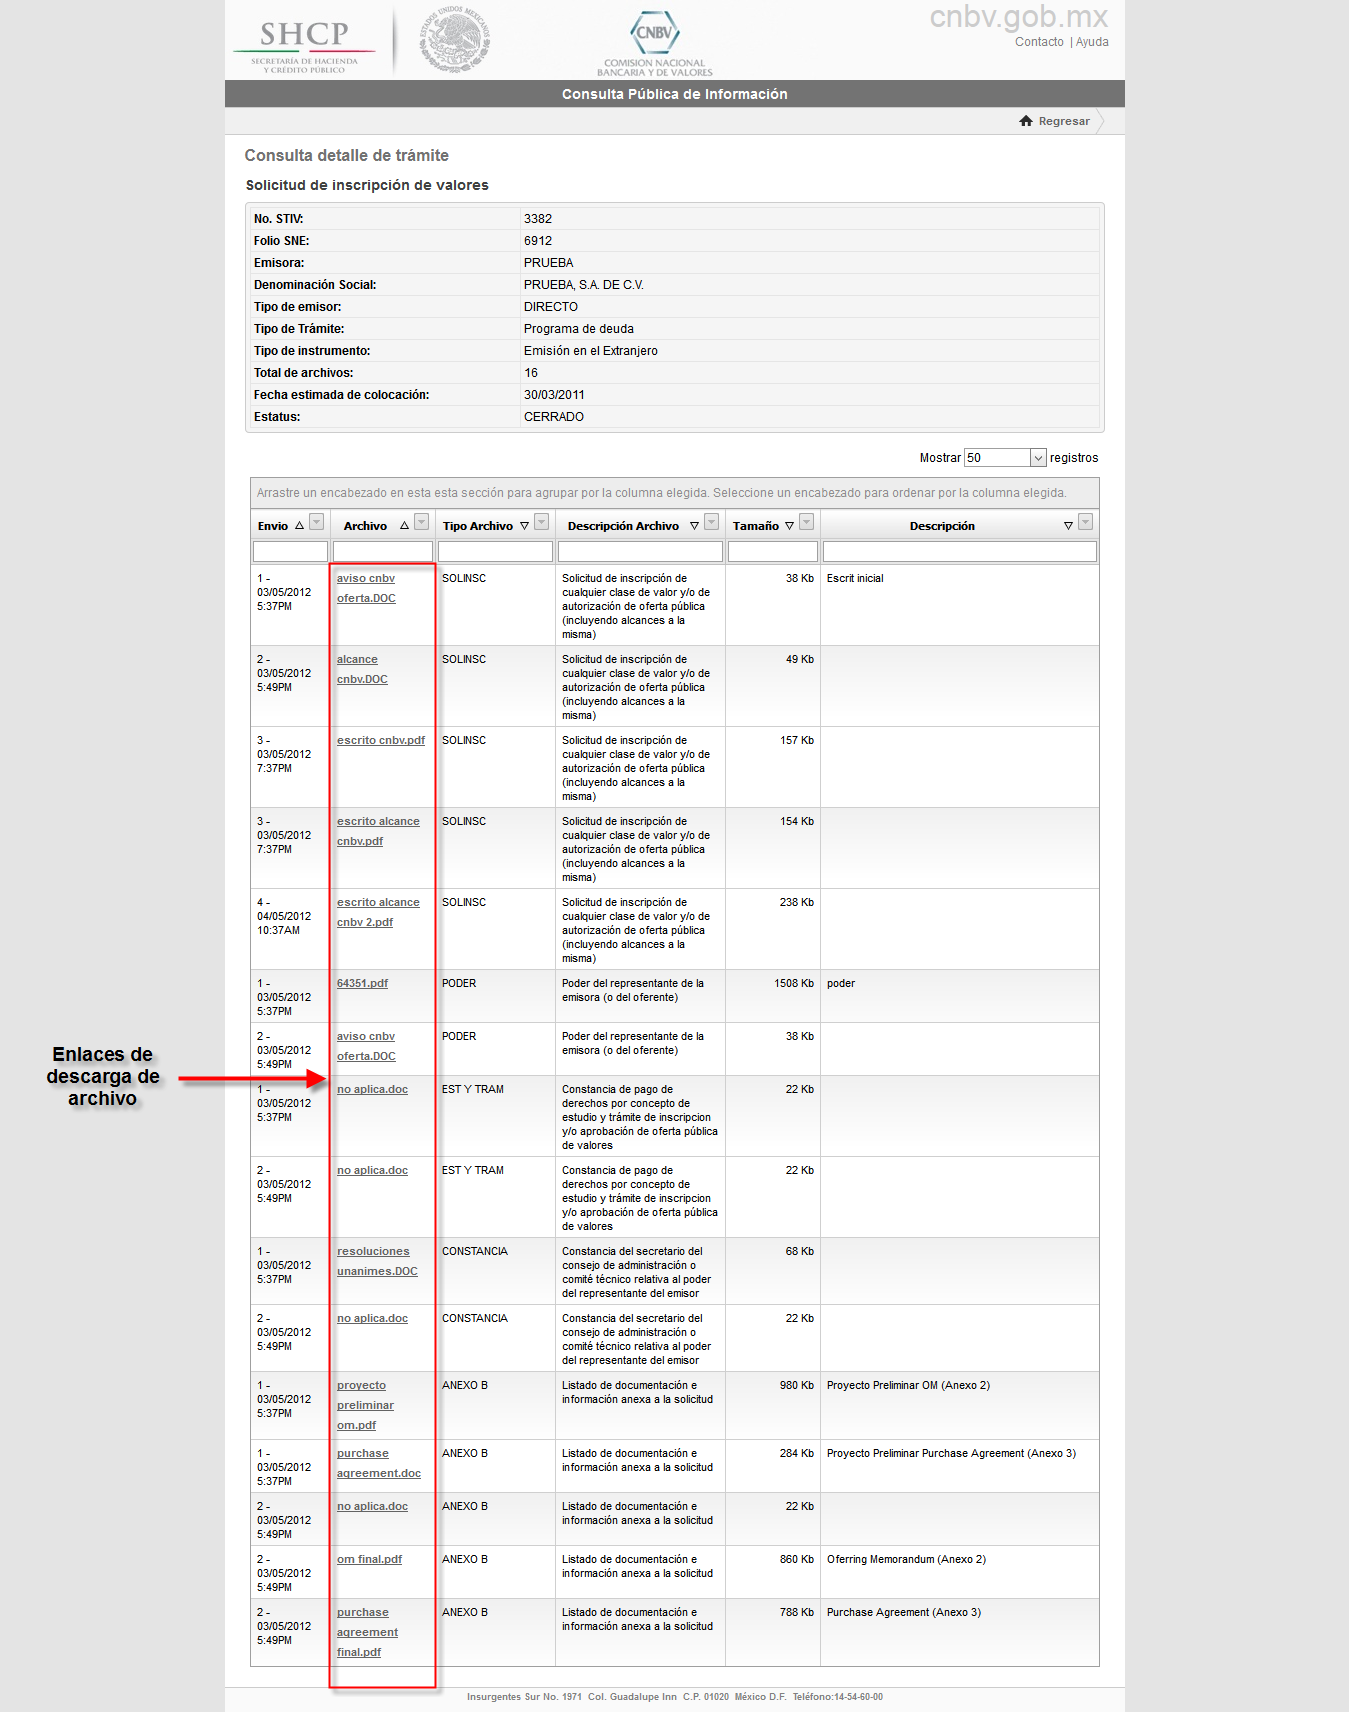 La columna Archivo muestra los enlaces de descarga para cada archivo, el usuario puede abrir o